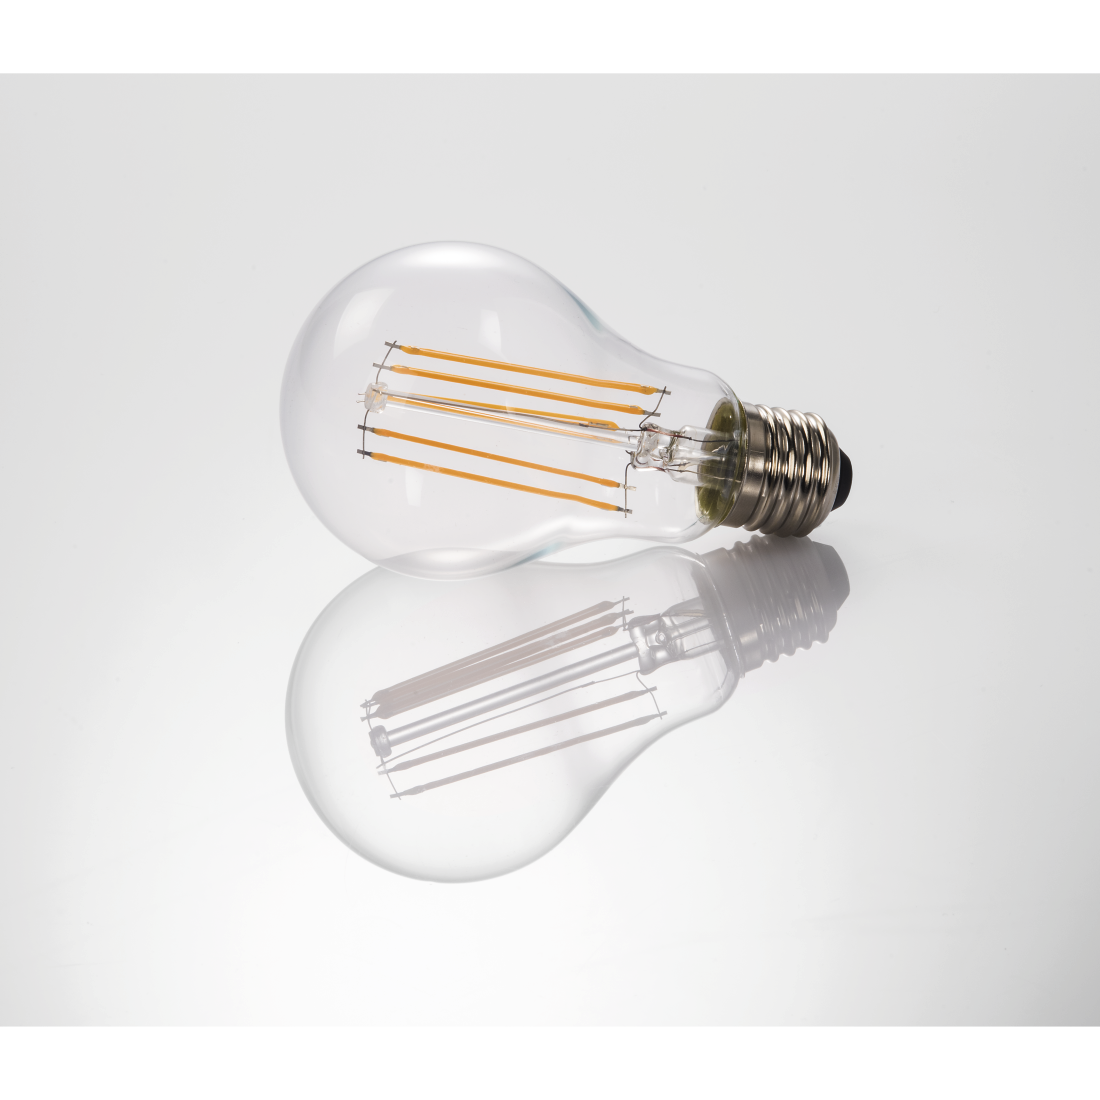 abx3 High-Res Image 3 - Xavax, Ampoule filament LED, E27, 1521lm rempl. lpe à incand. 100 W, blc chd